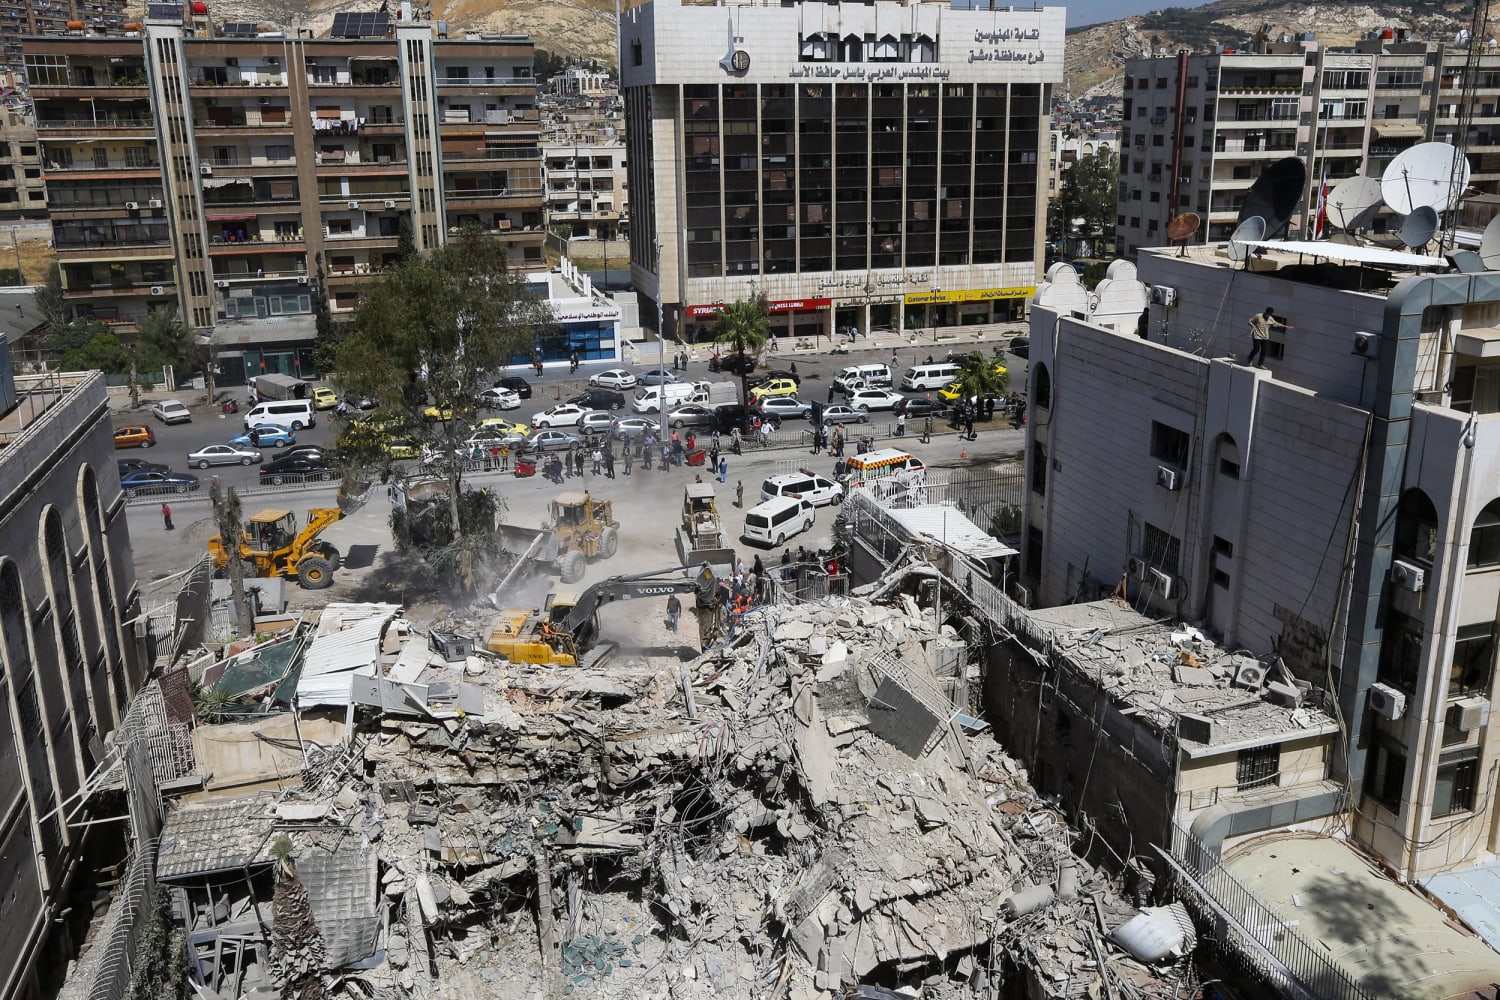 Iran Warns Israel: Embassies at Risk After Damascus Attack